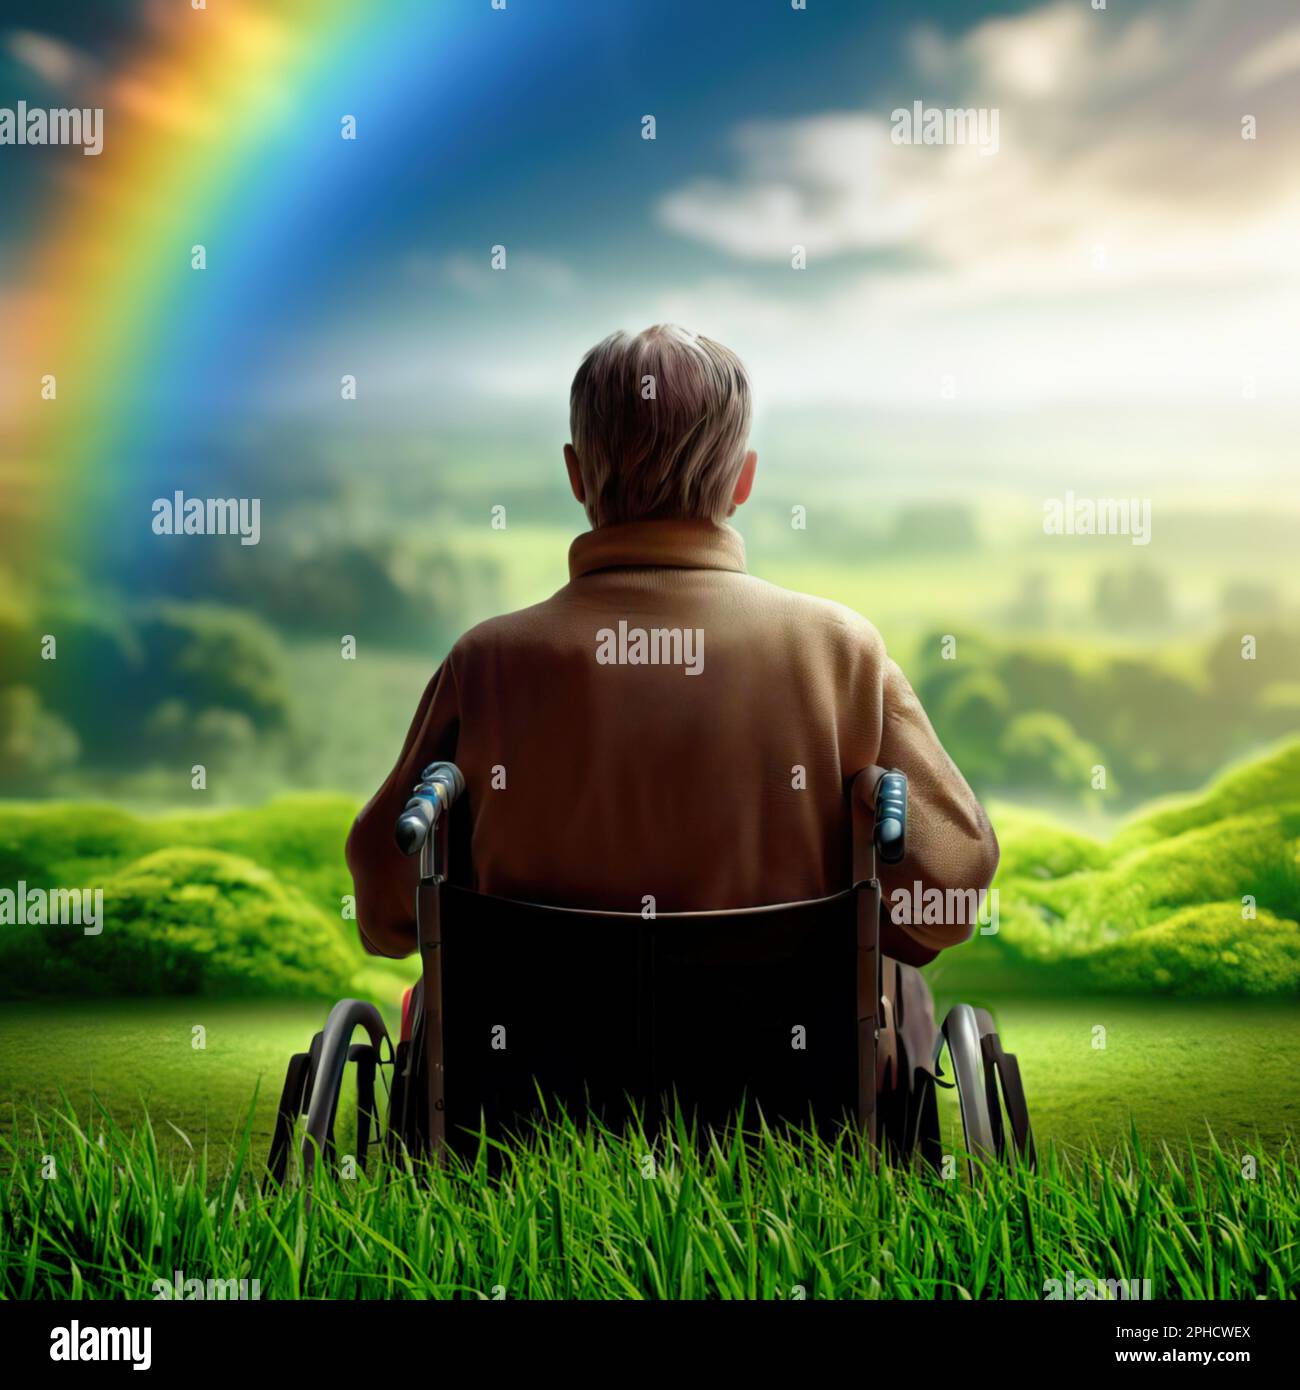 Un'immagine metaforica di un anziano da dietro in una sedia a rotelle che guarda un mondo idilliaco con serenità Foto Stock